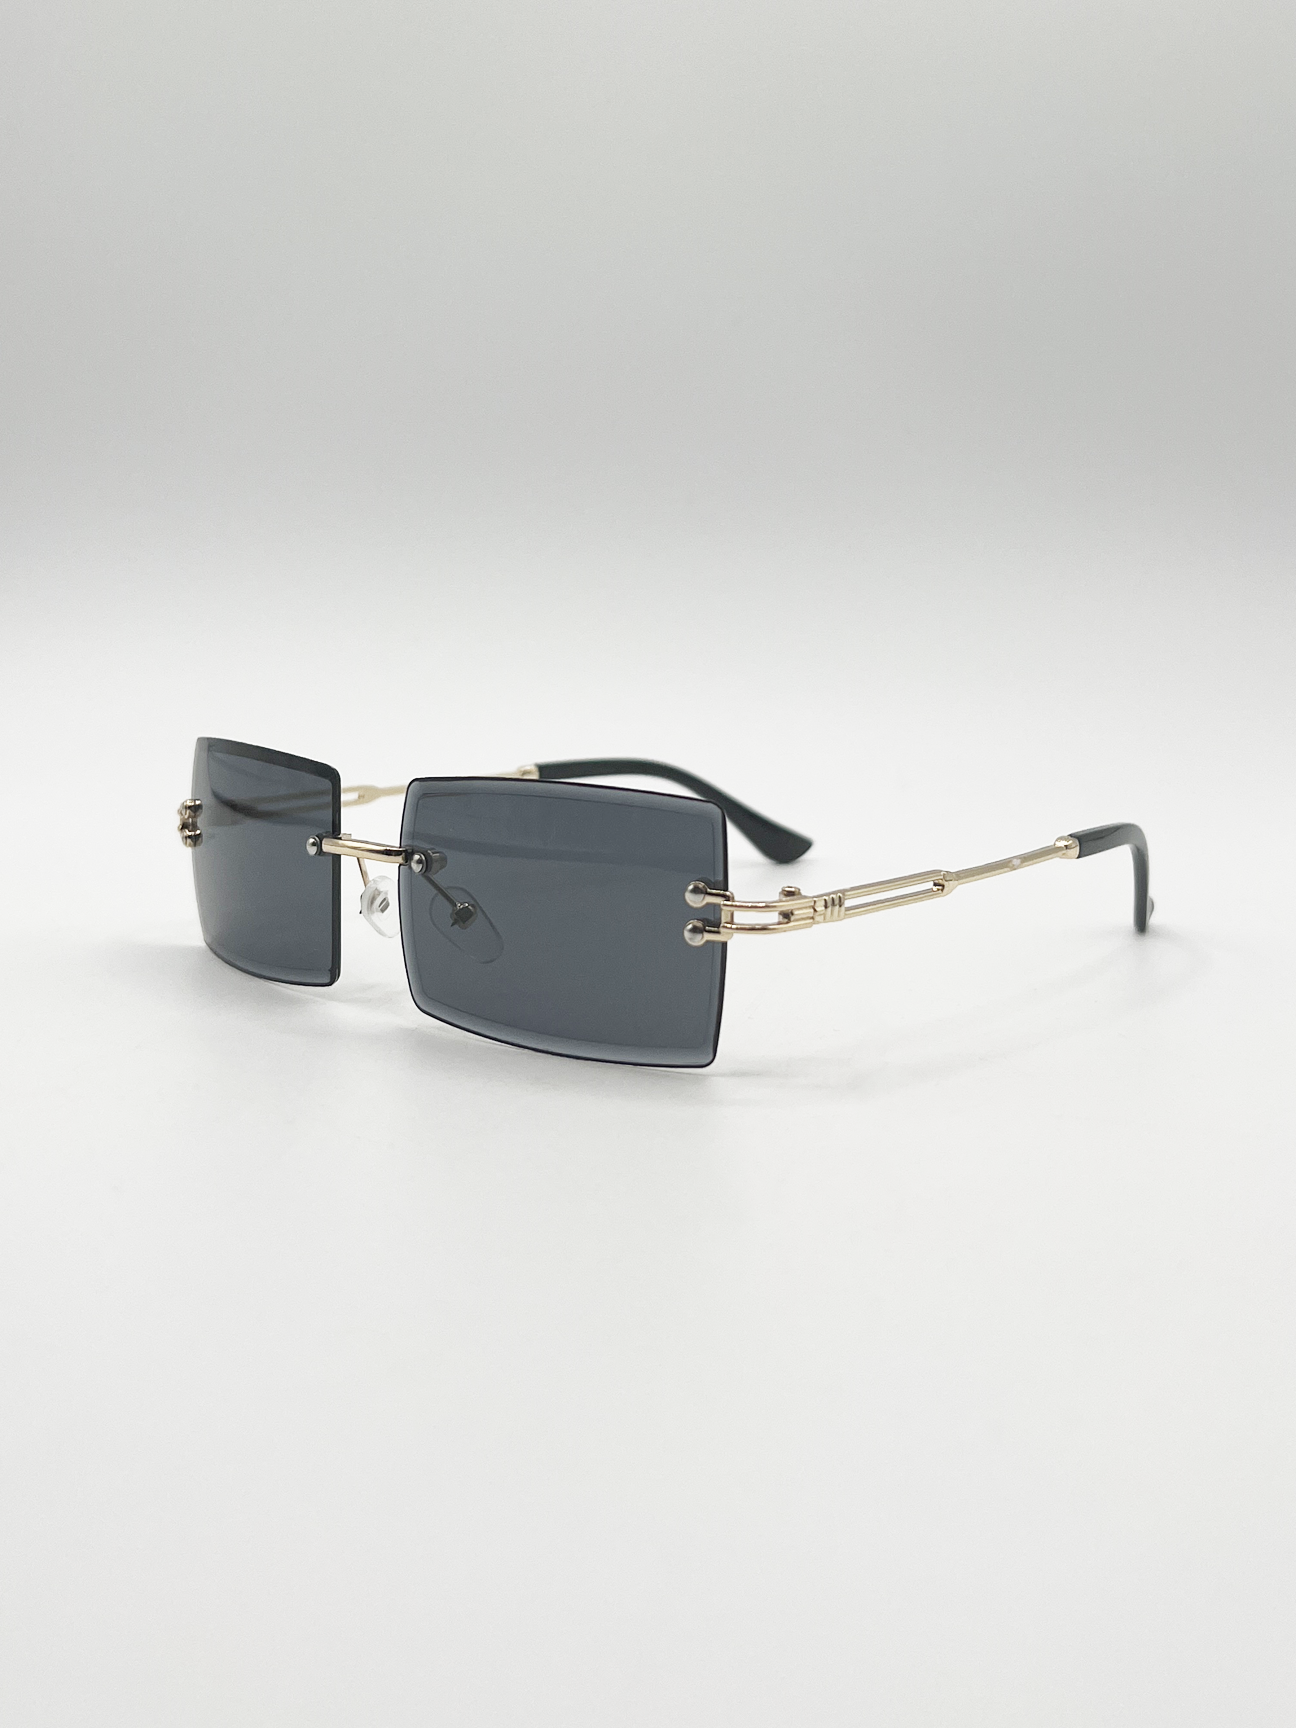 Frameless Square Sunglasses in Black